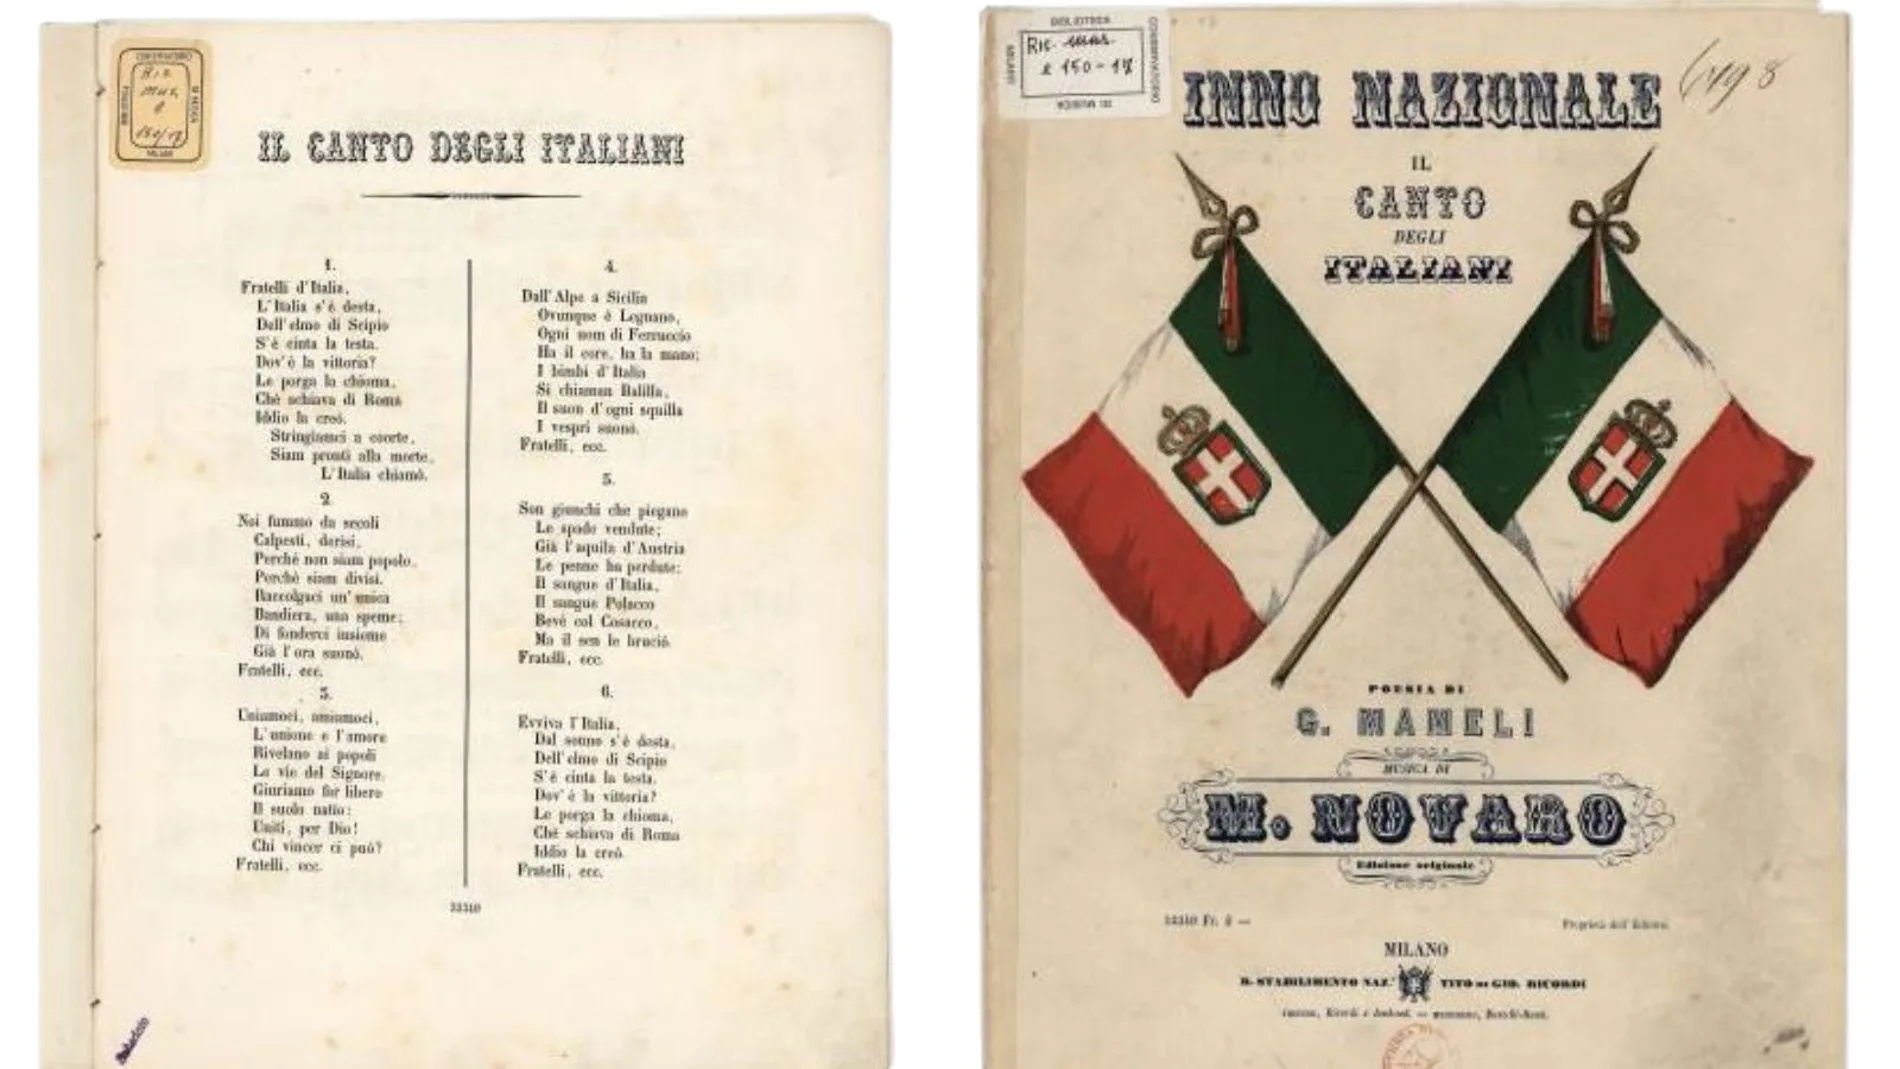 Este es el himno de Italia, de donde Hermanos de Italia extrae su nombre y su lema